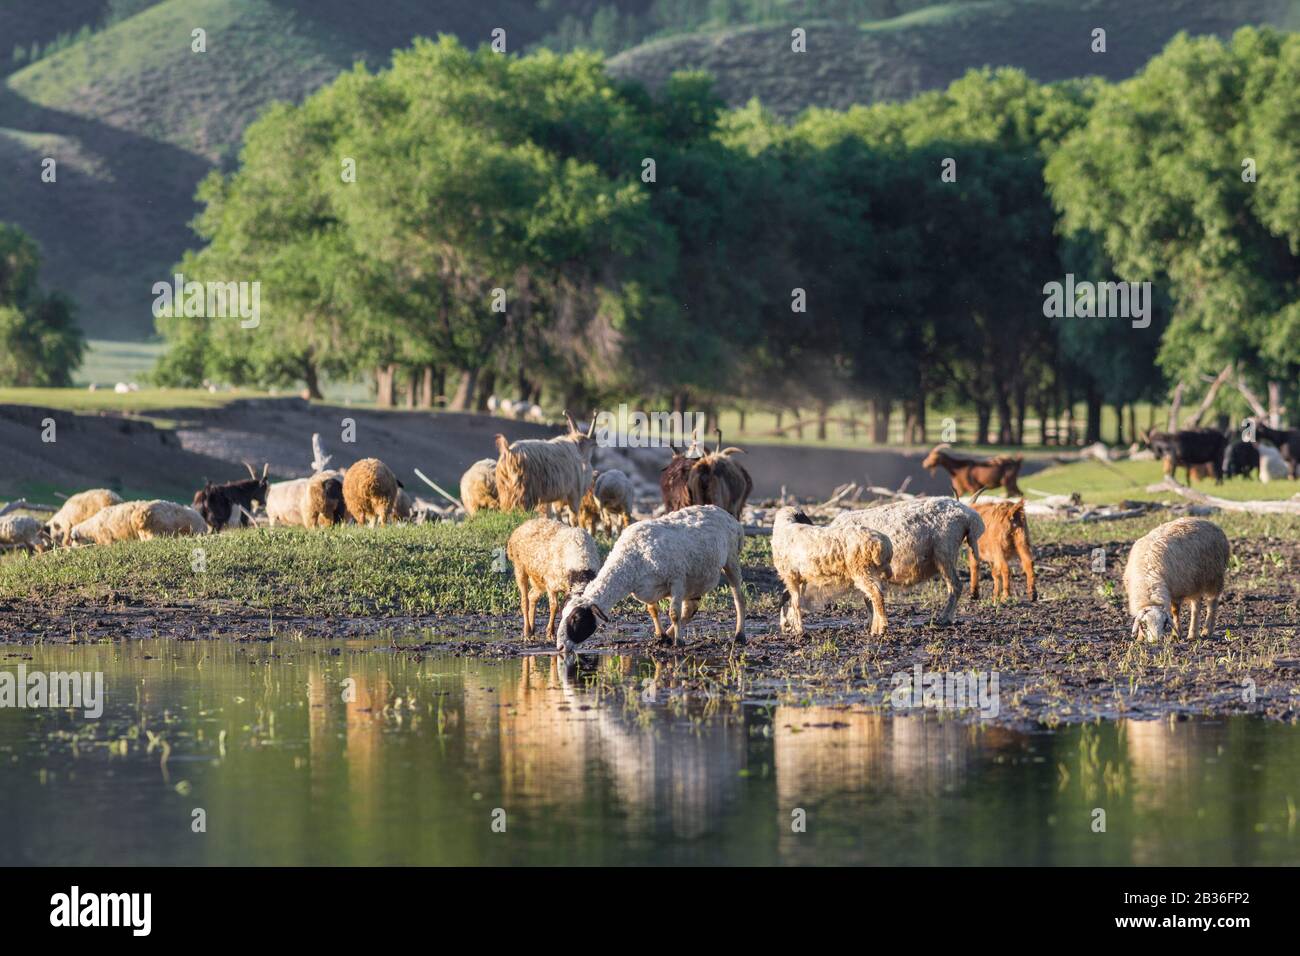 Mongolie, province de Bulgan, près de Namnang, troupeau de chèvres et de moutons buvant dans une rivière Banque D'Images